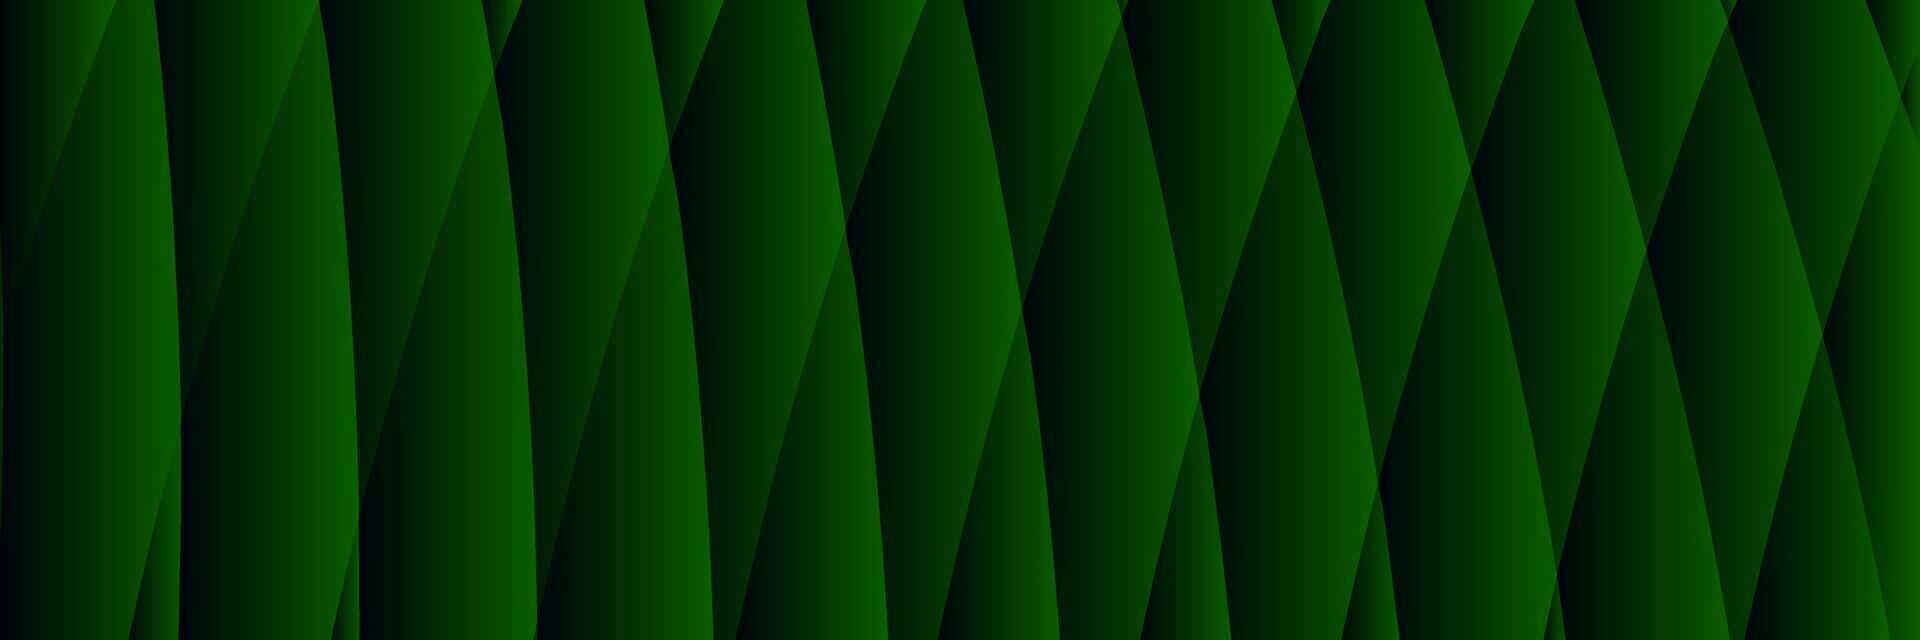 abstract elegant dark green gradient background vector